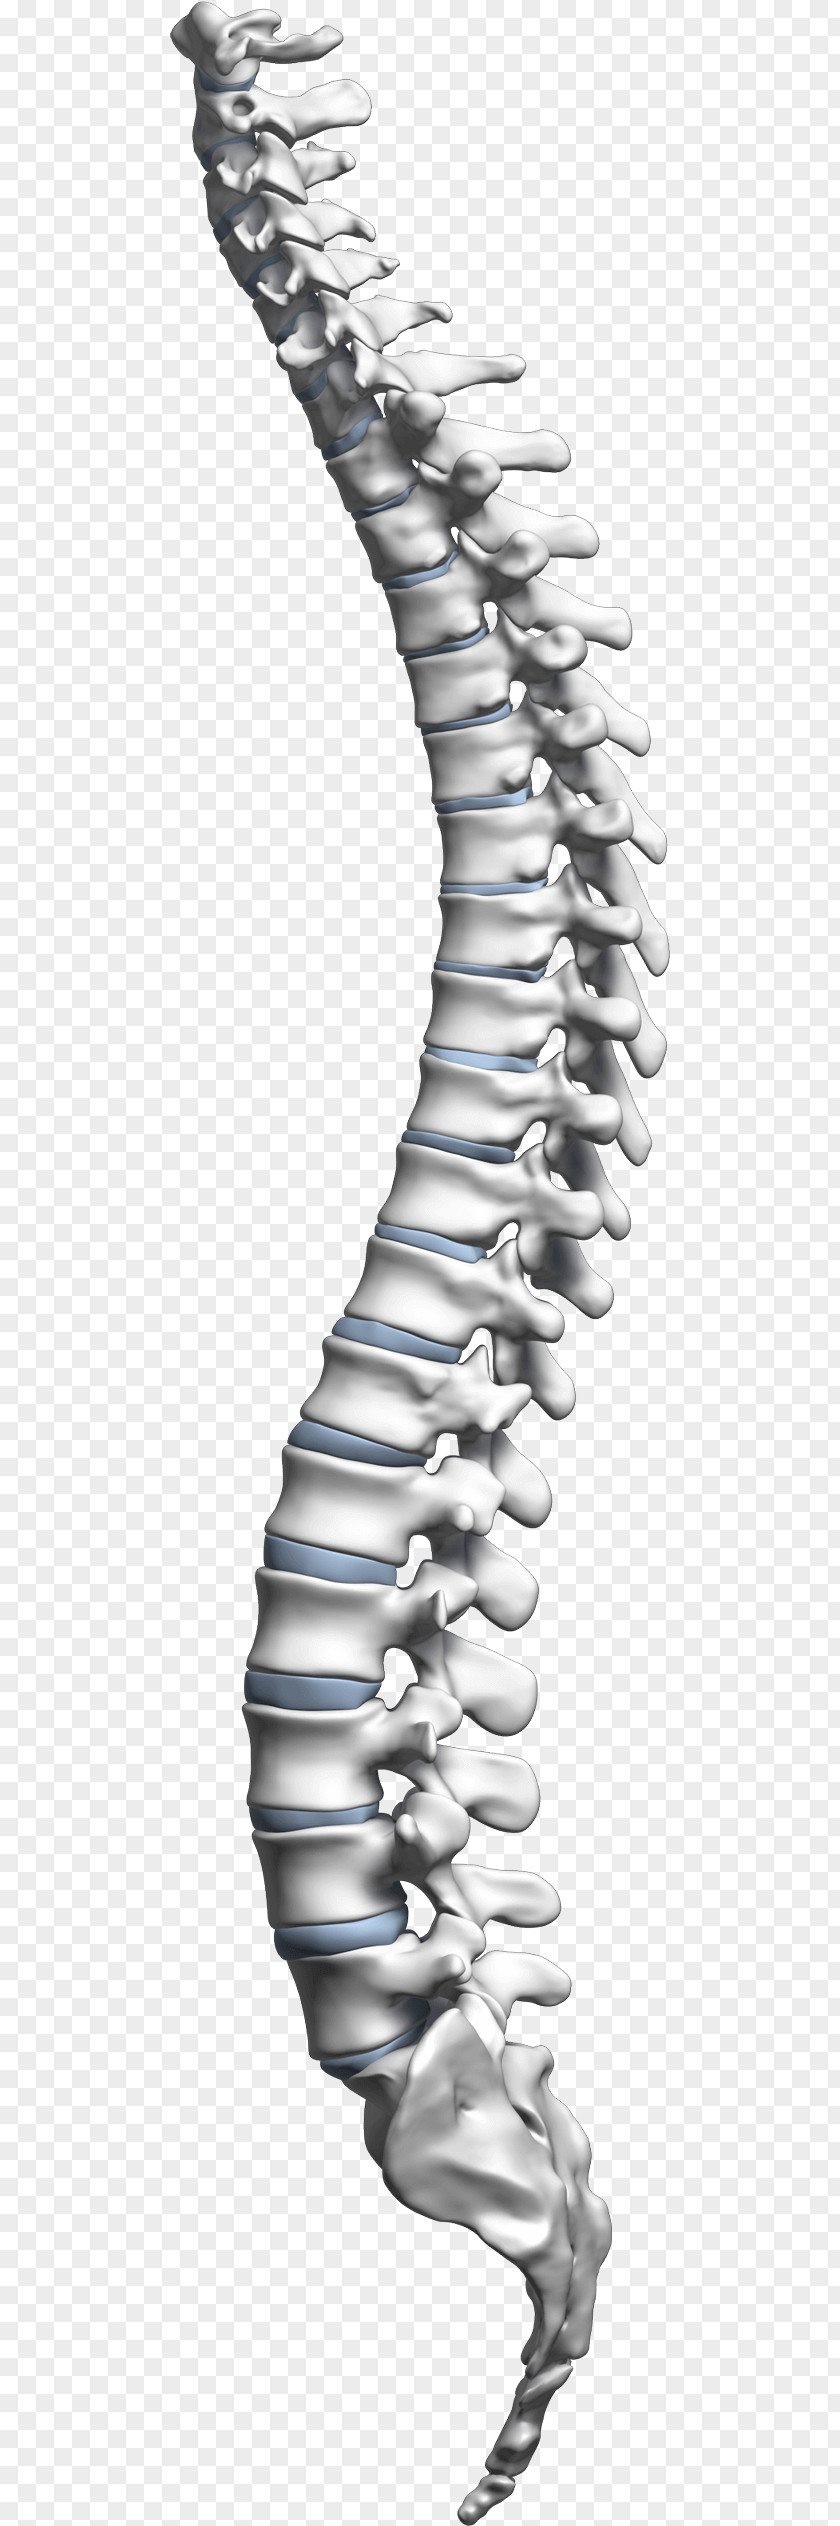 Nasolacrimal Duct Obstruction Living Well Spine Center Vertebral Column Spinal Cord Neck Cervical Vertebrae PNG